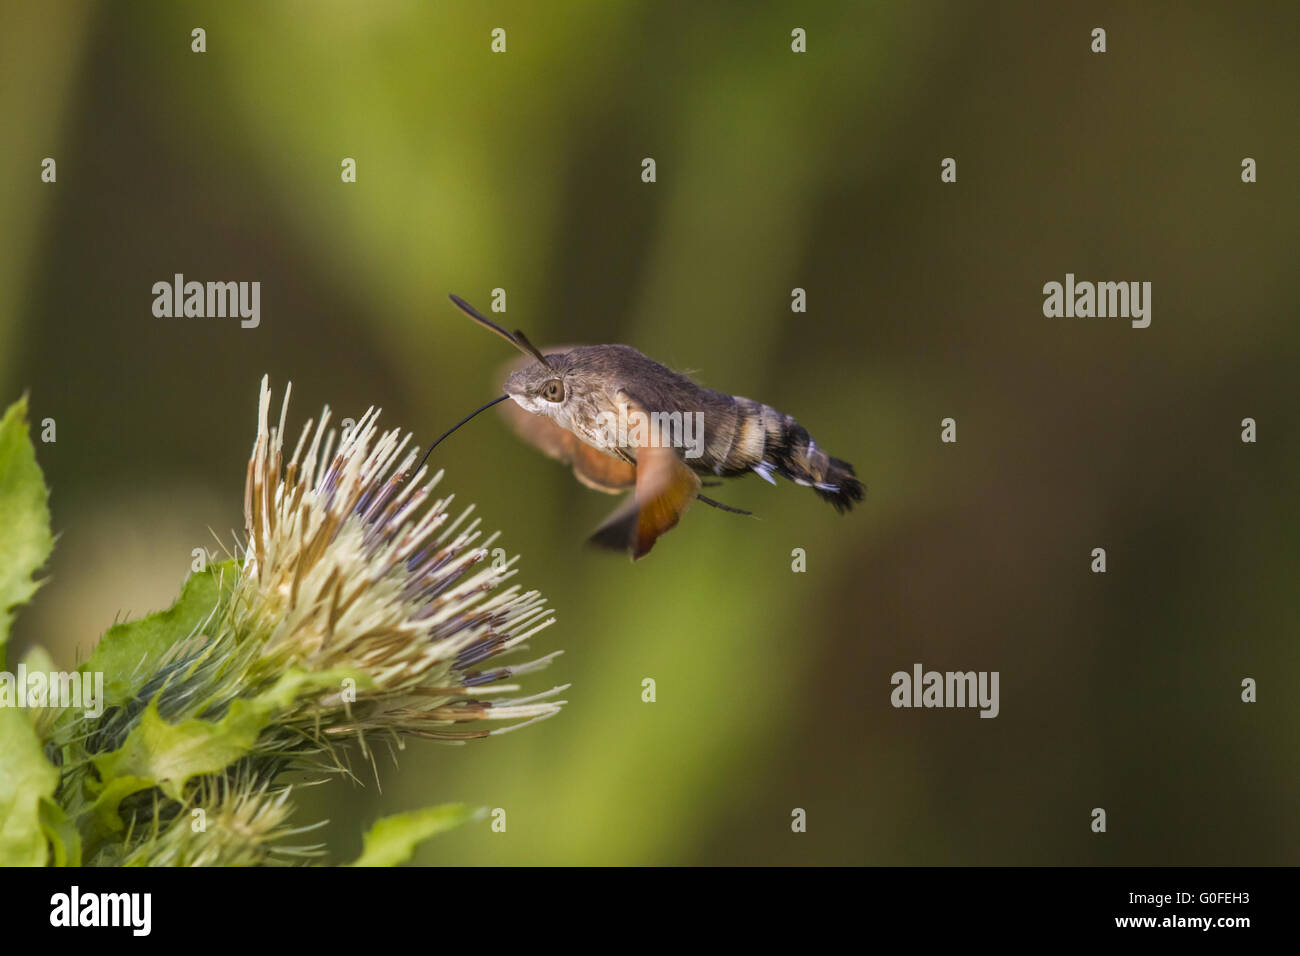 Hummingbird hawkmoth (Macroglossum stellatarum) Stock Photo